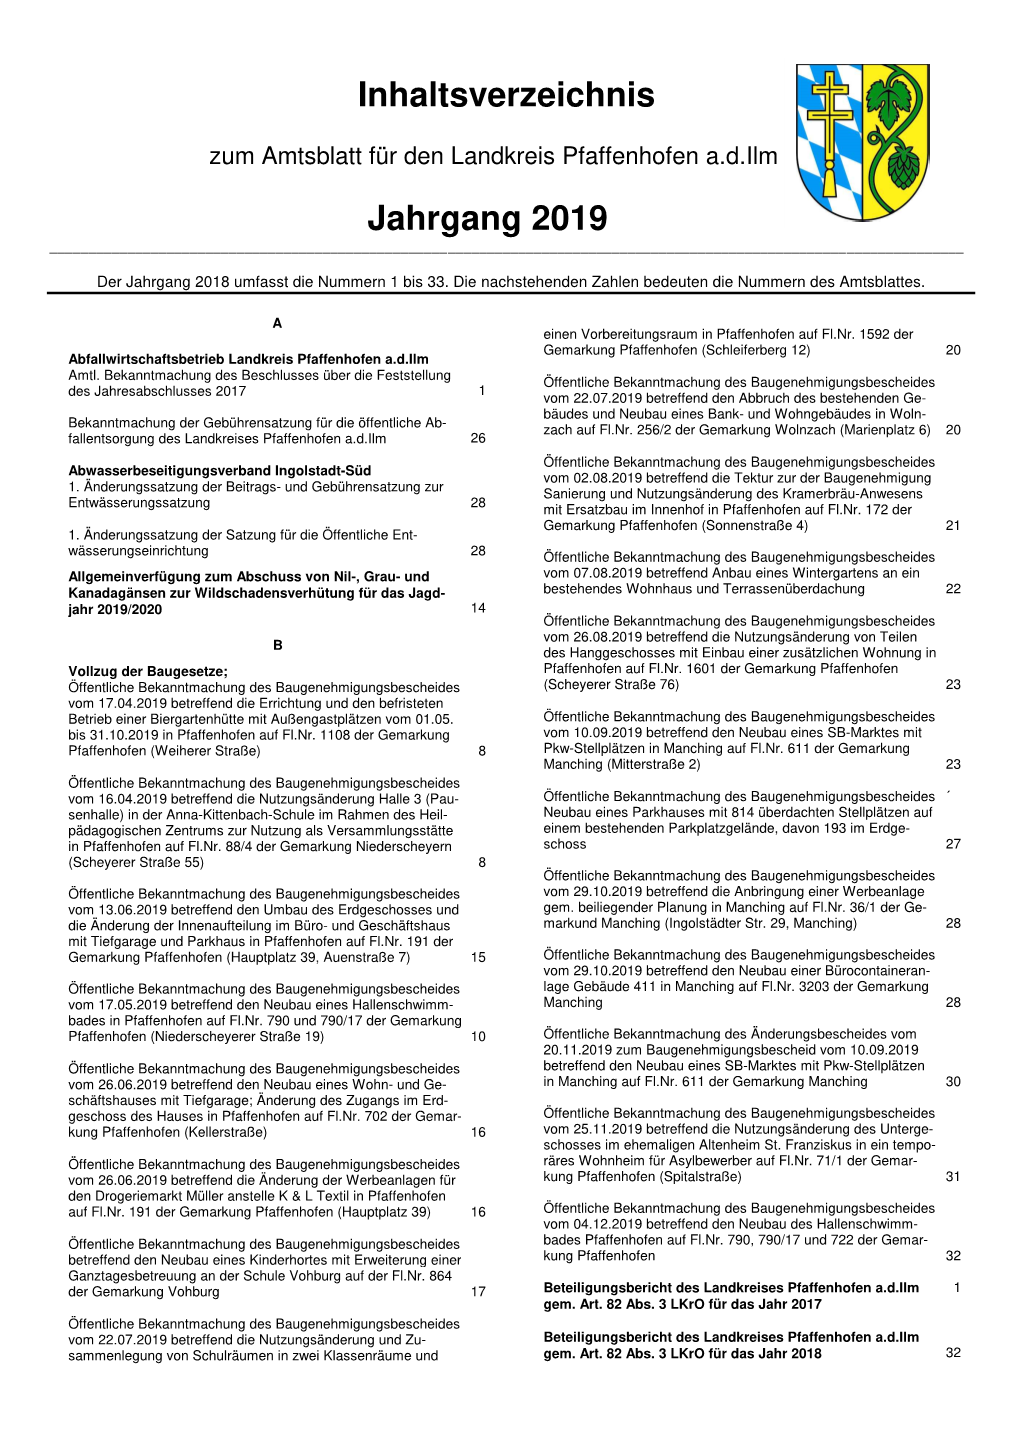 Inhaltsverzeichnis Amtsblätter 2019